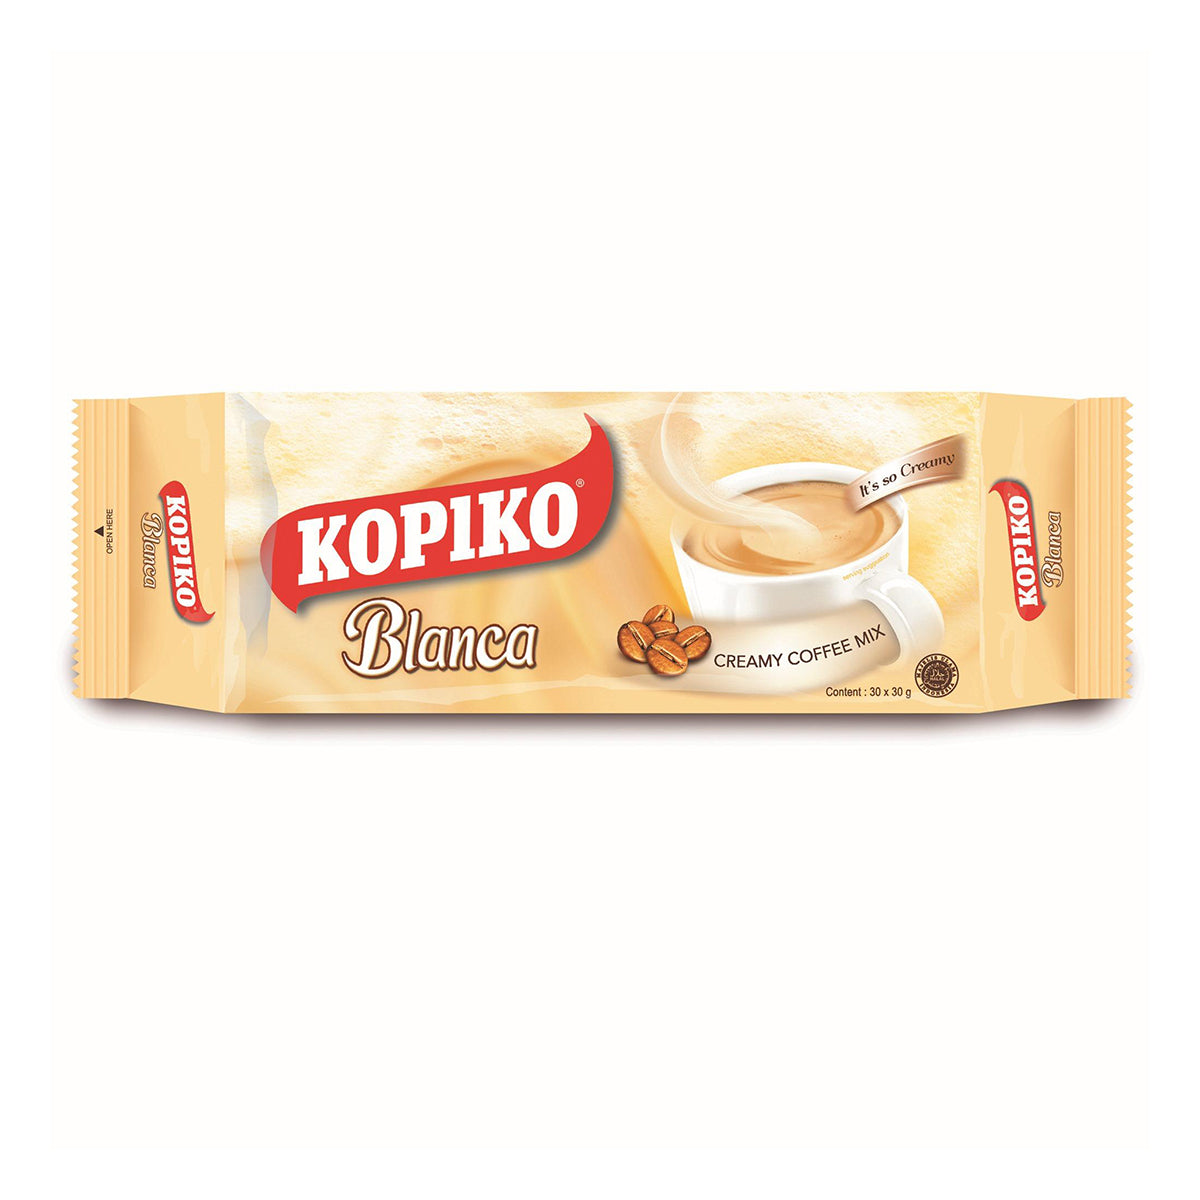 kopiko blanca 3 in 1 creamy coffee mix - 30ct